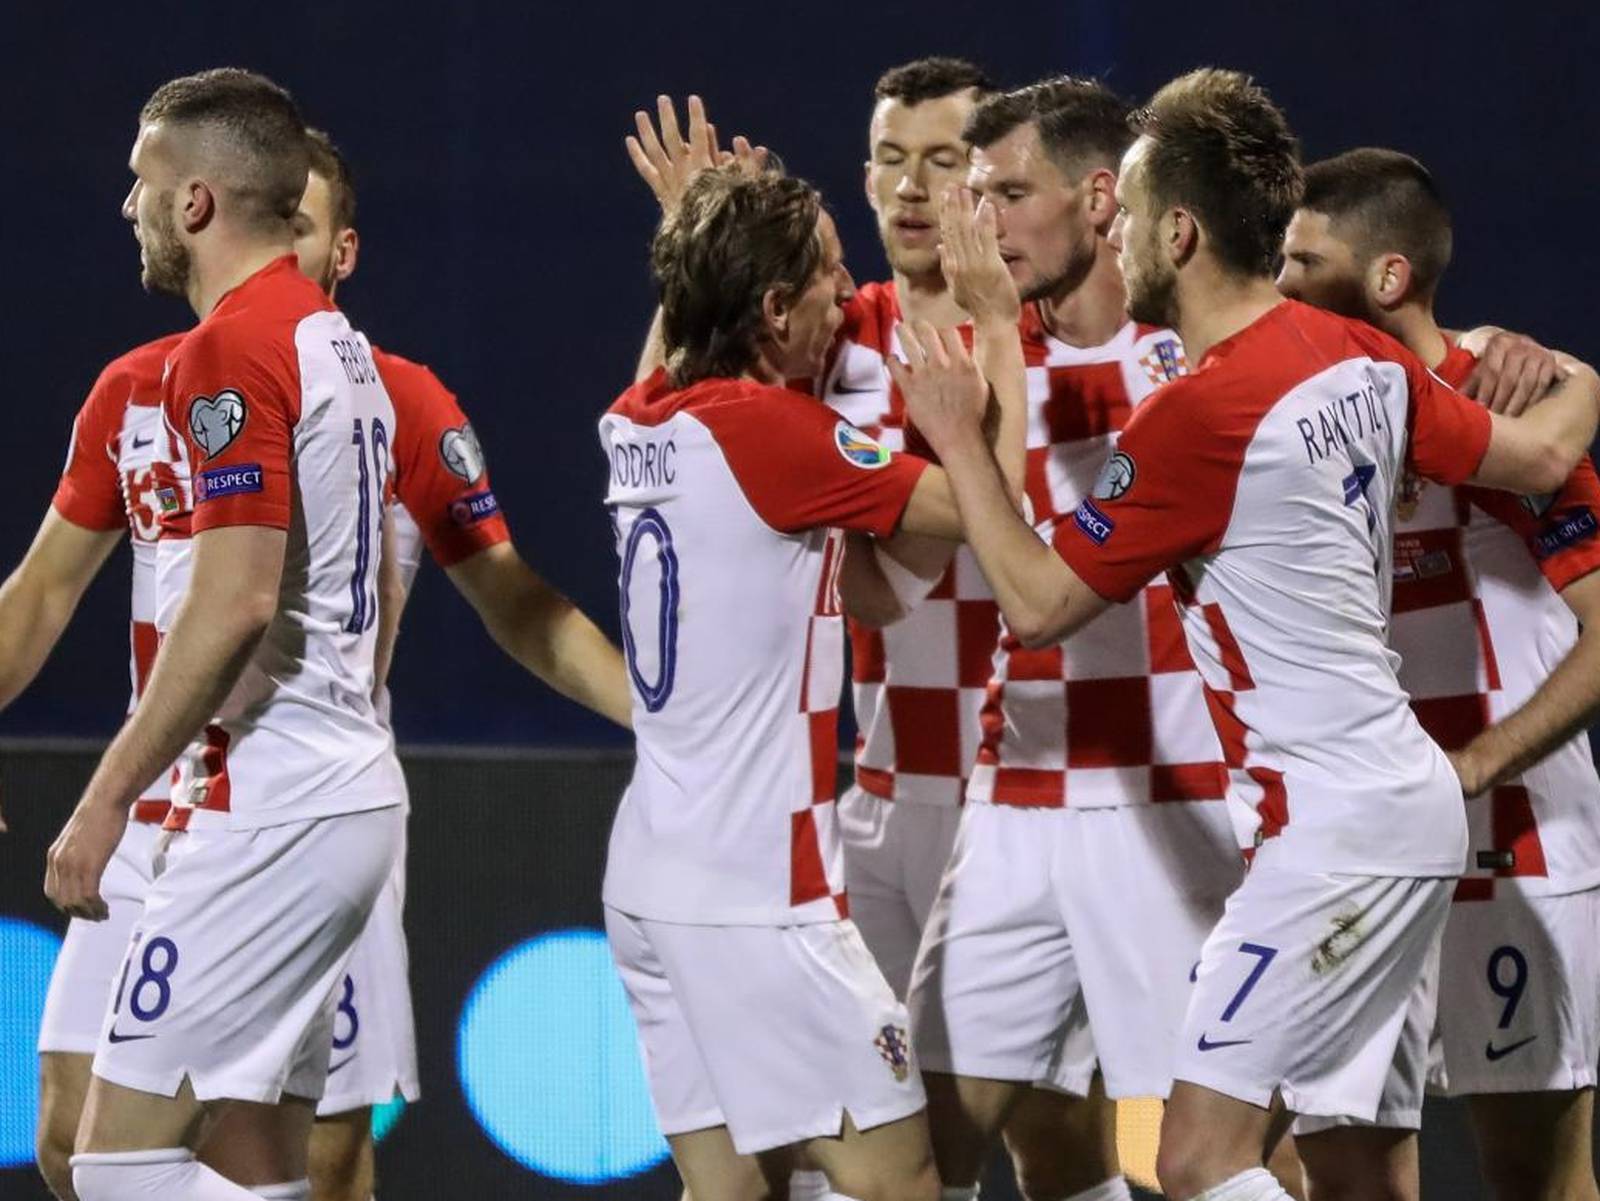 Hrvatska protiv AzerbajdÅ¾ana igra prvu kvalifikacijsku utakmicu za EURO 2020.